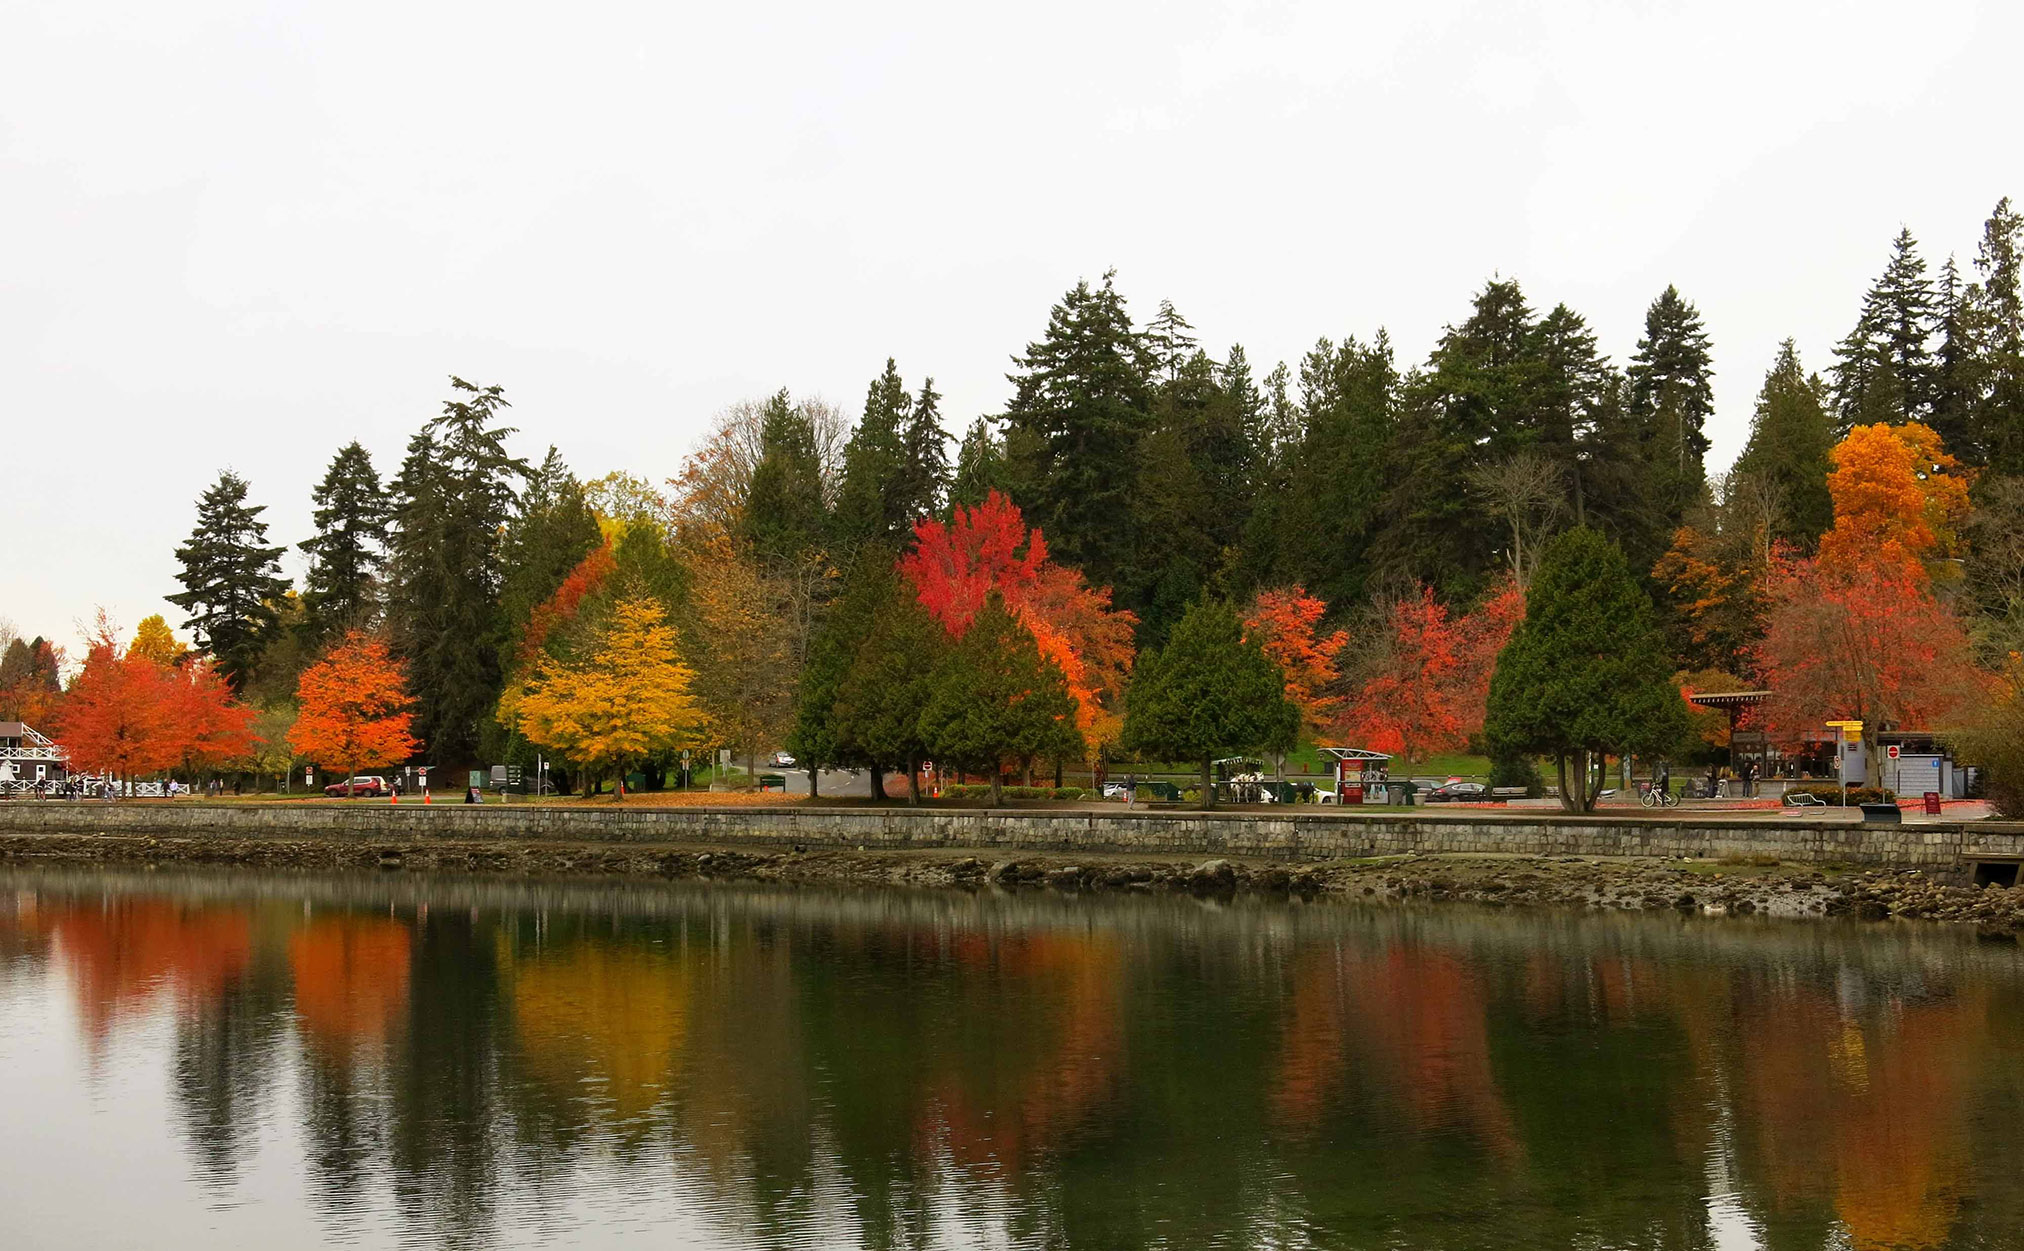 Vancouver during autumn season